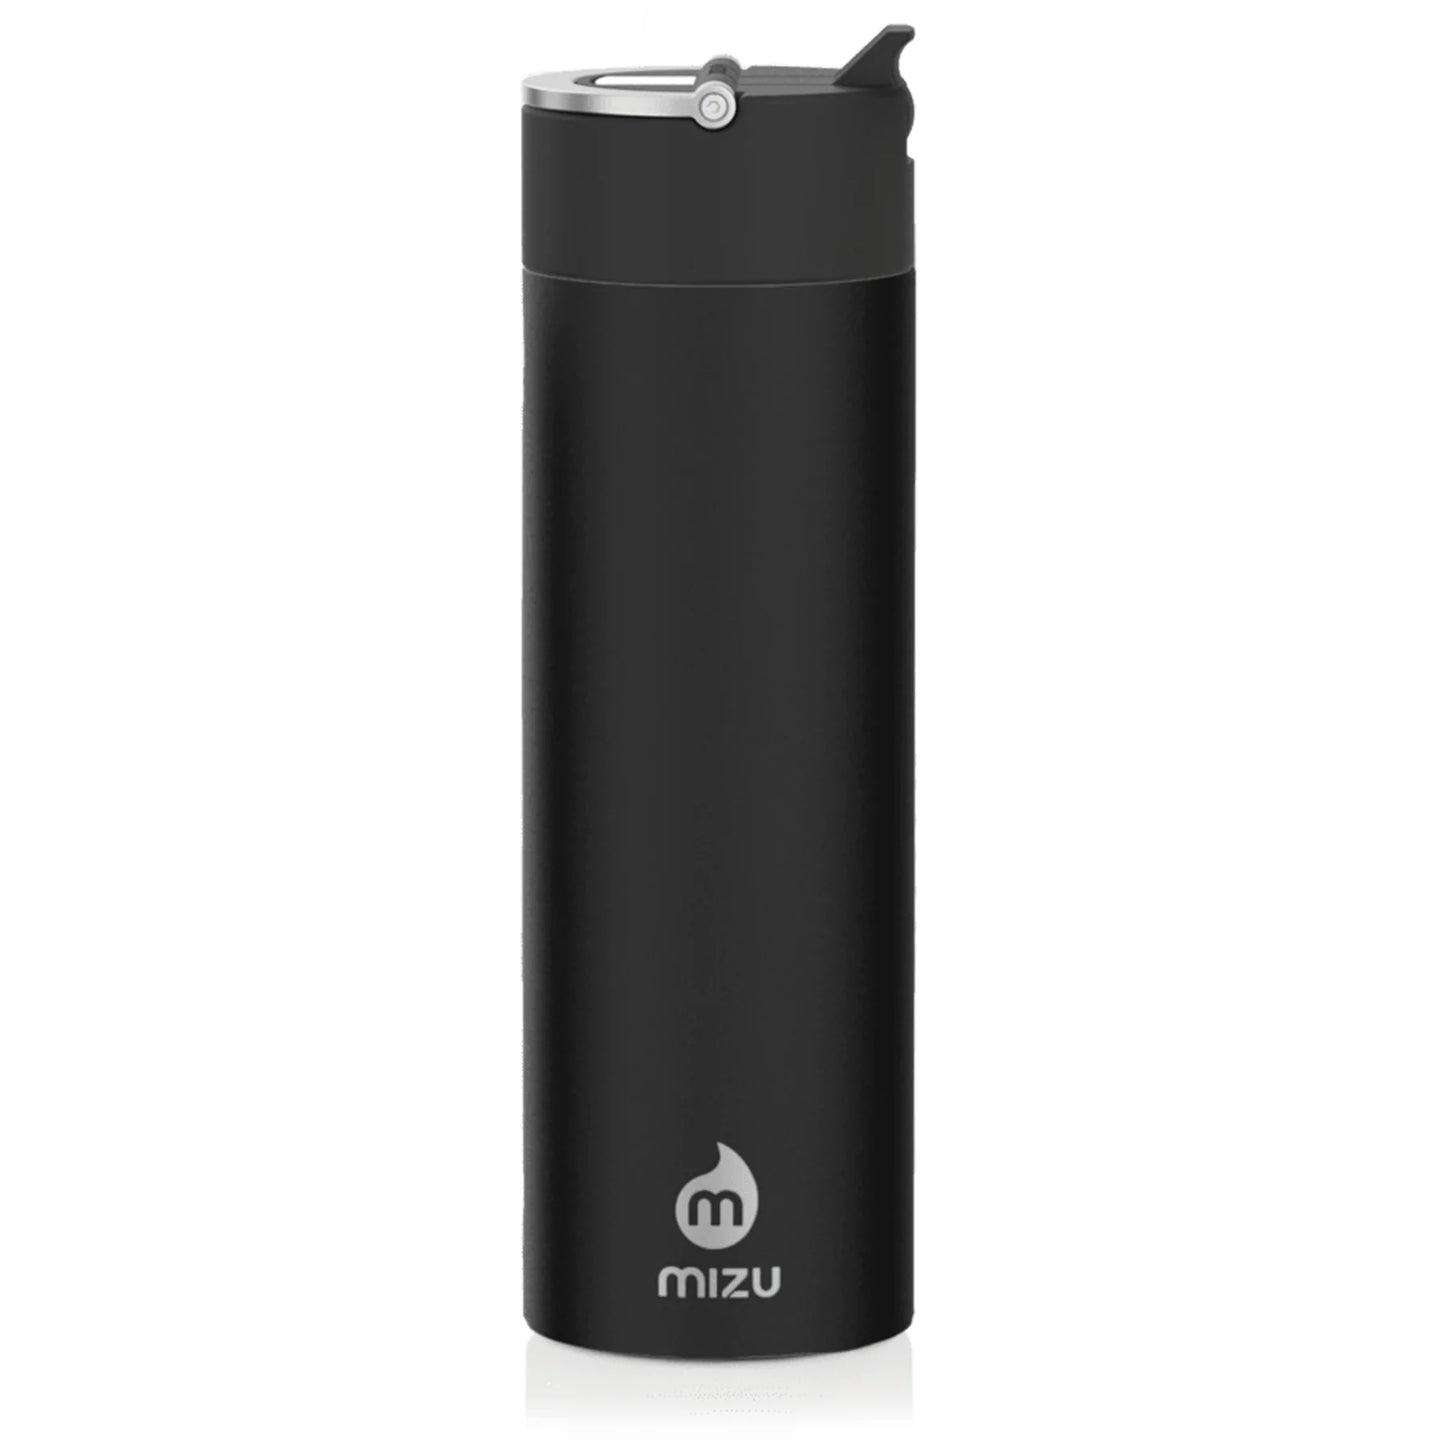 MIZU M9 water bottle